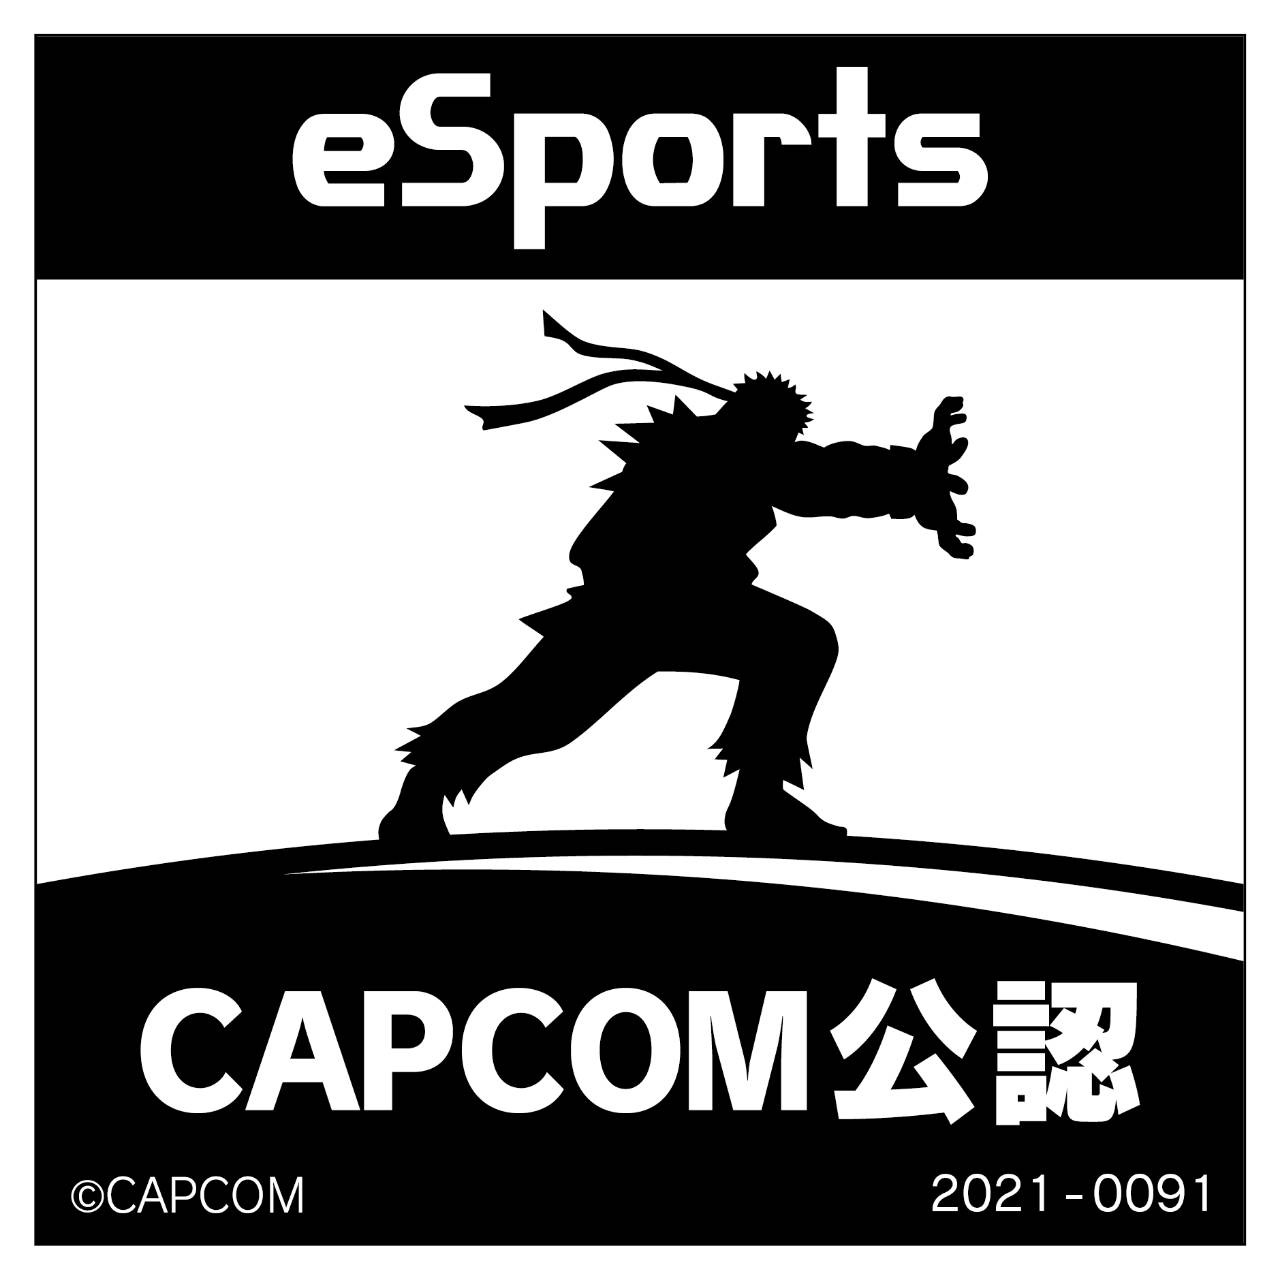 eSports CAPCOM公認 2021-0091